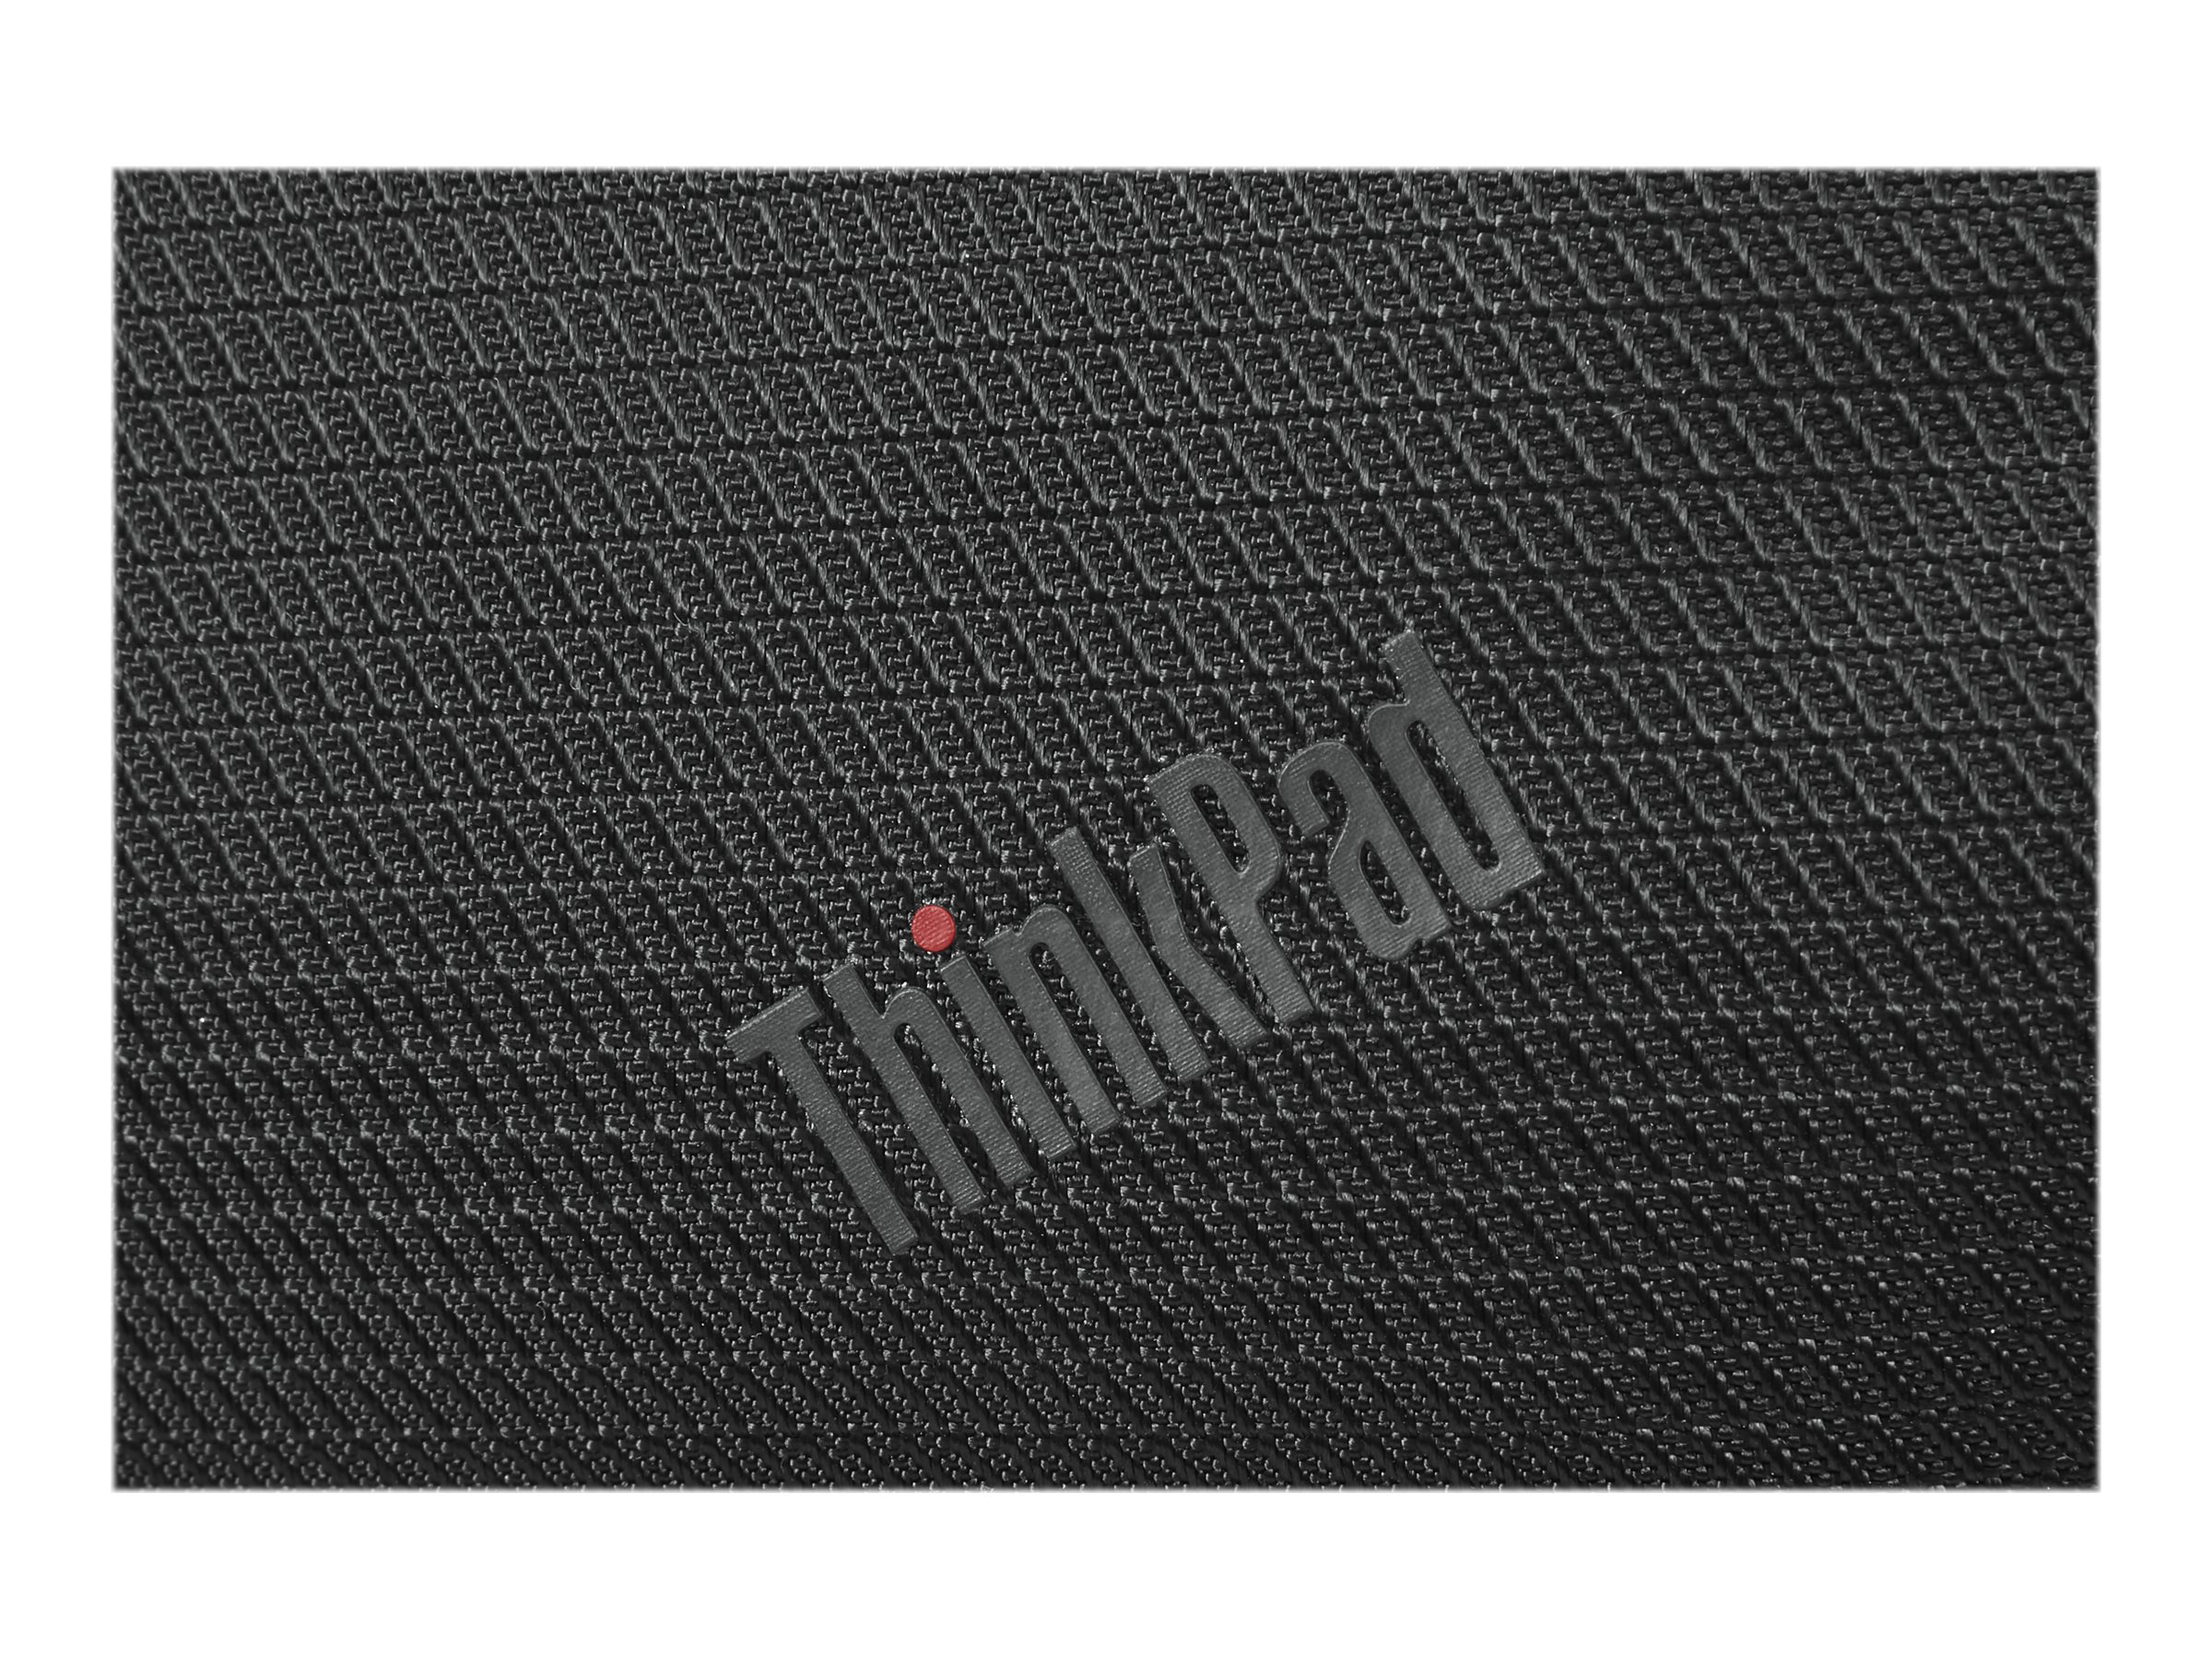 Lenovo ThinkPad Essential Topload (Eco) - Sacoche pour ordinateur portable - 16" - Noir avec des touches de rouge - 4X41C12469 - Sacoches pour ordinateur portable